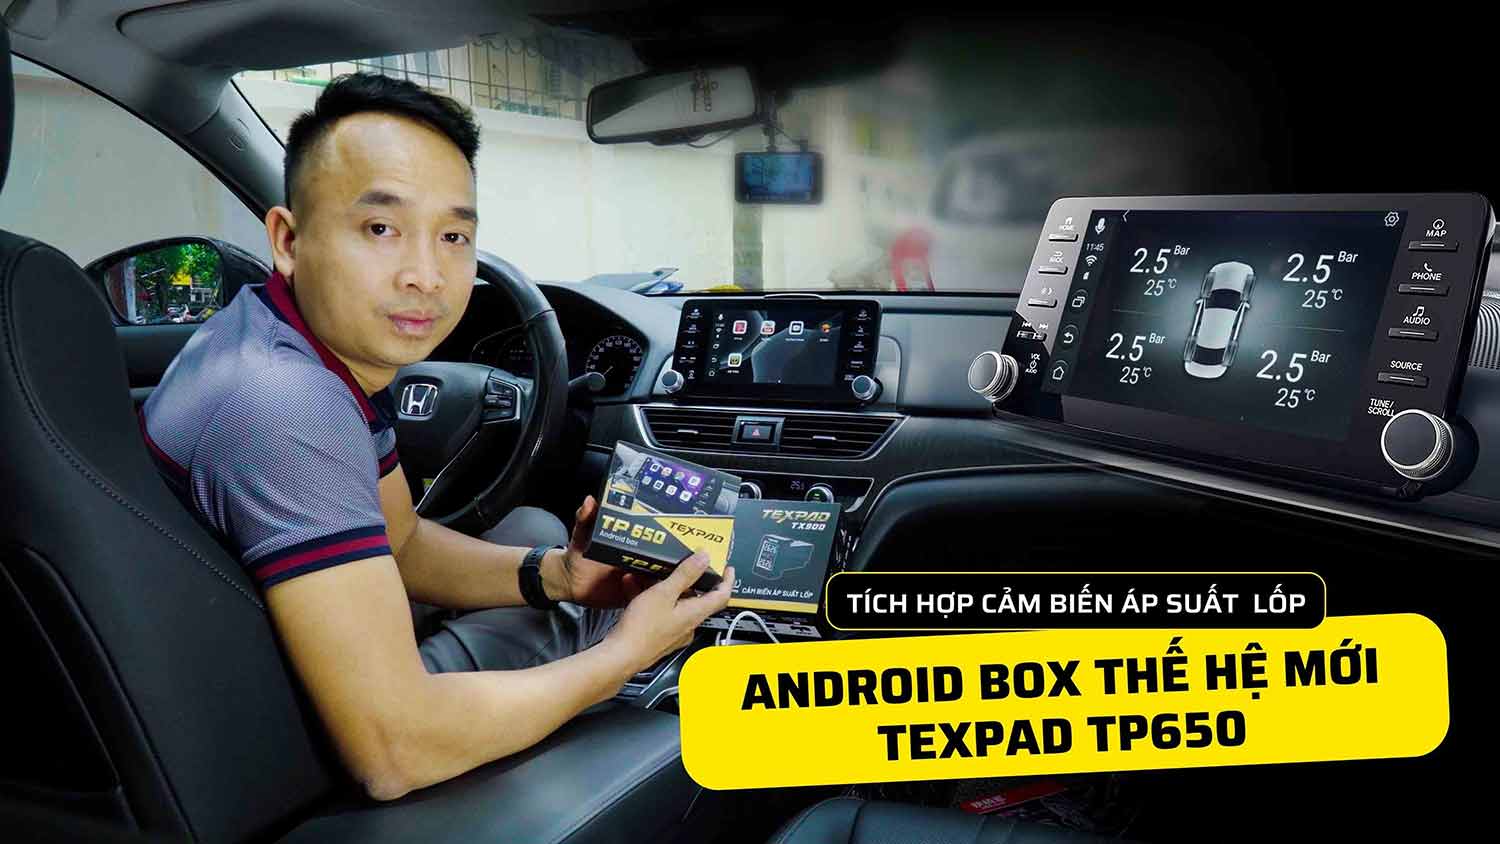 ChungAuto ra mắt Android Box TexPad Tp650 thông số kỹ thuật mạnh